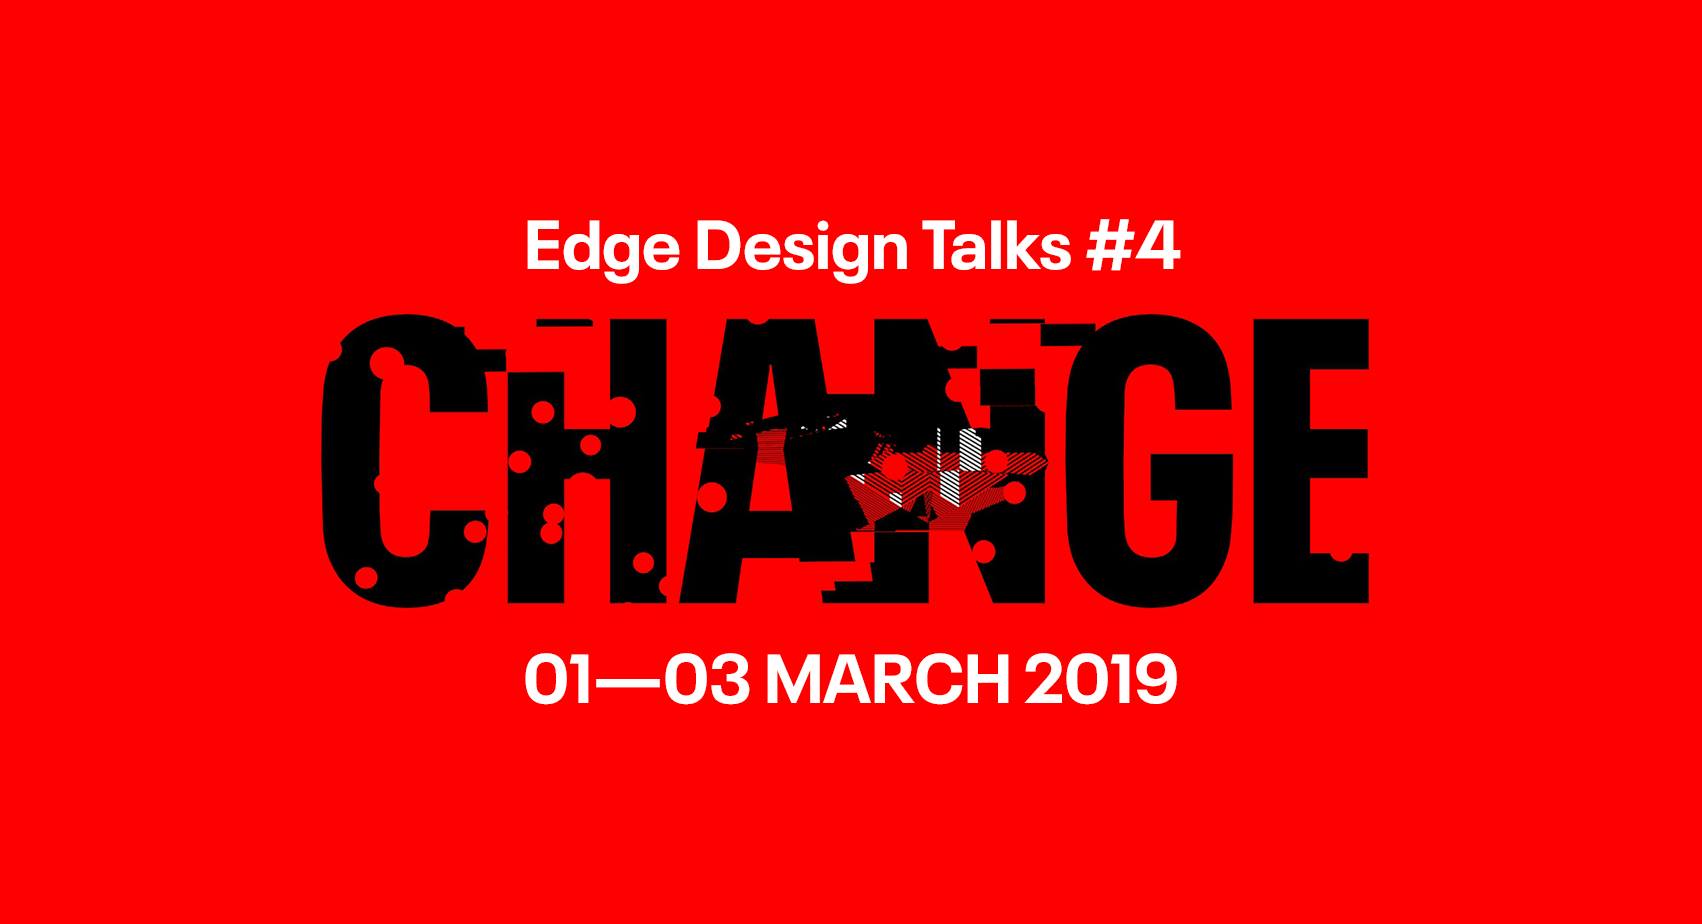 Edge Design Talks #4 – Movie Screening